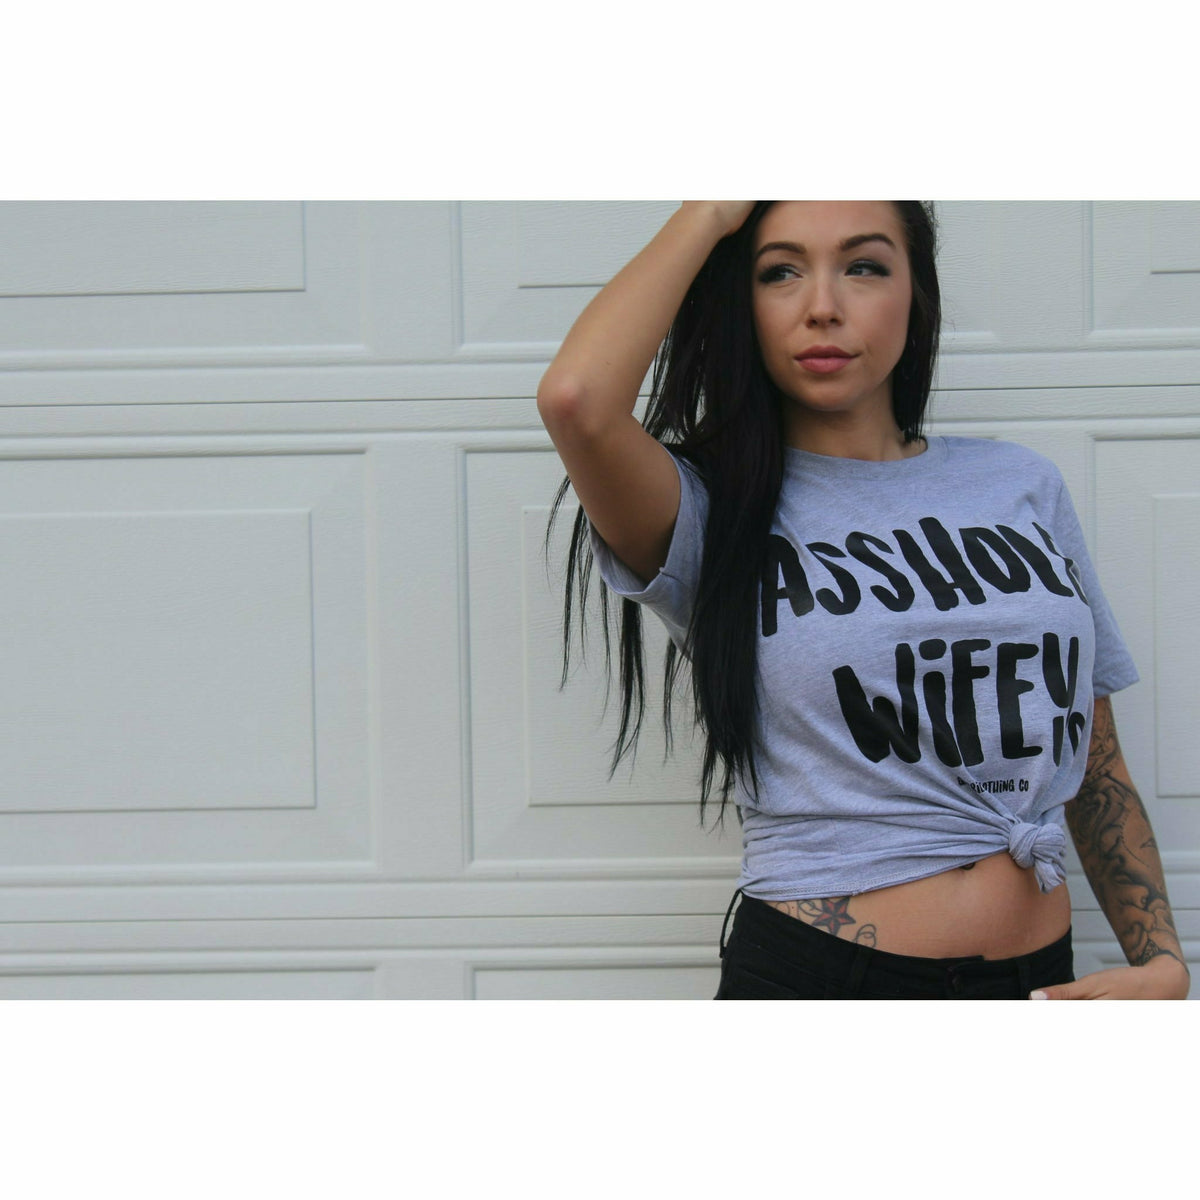 Asshole Wifey tee or sweatshirt